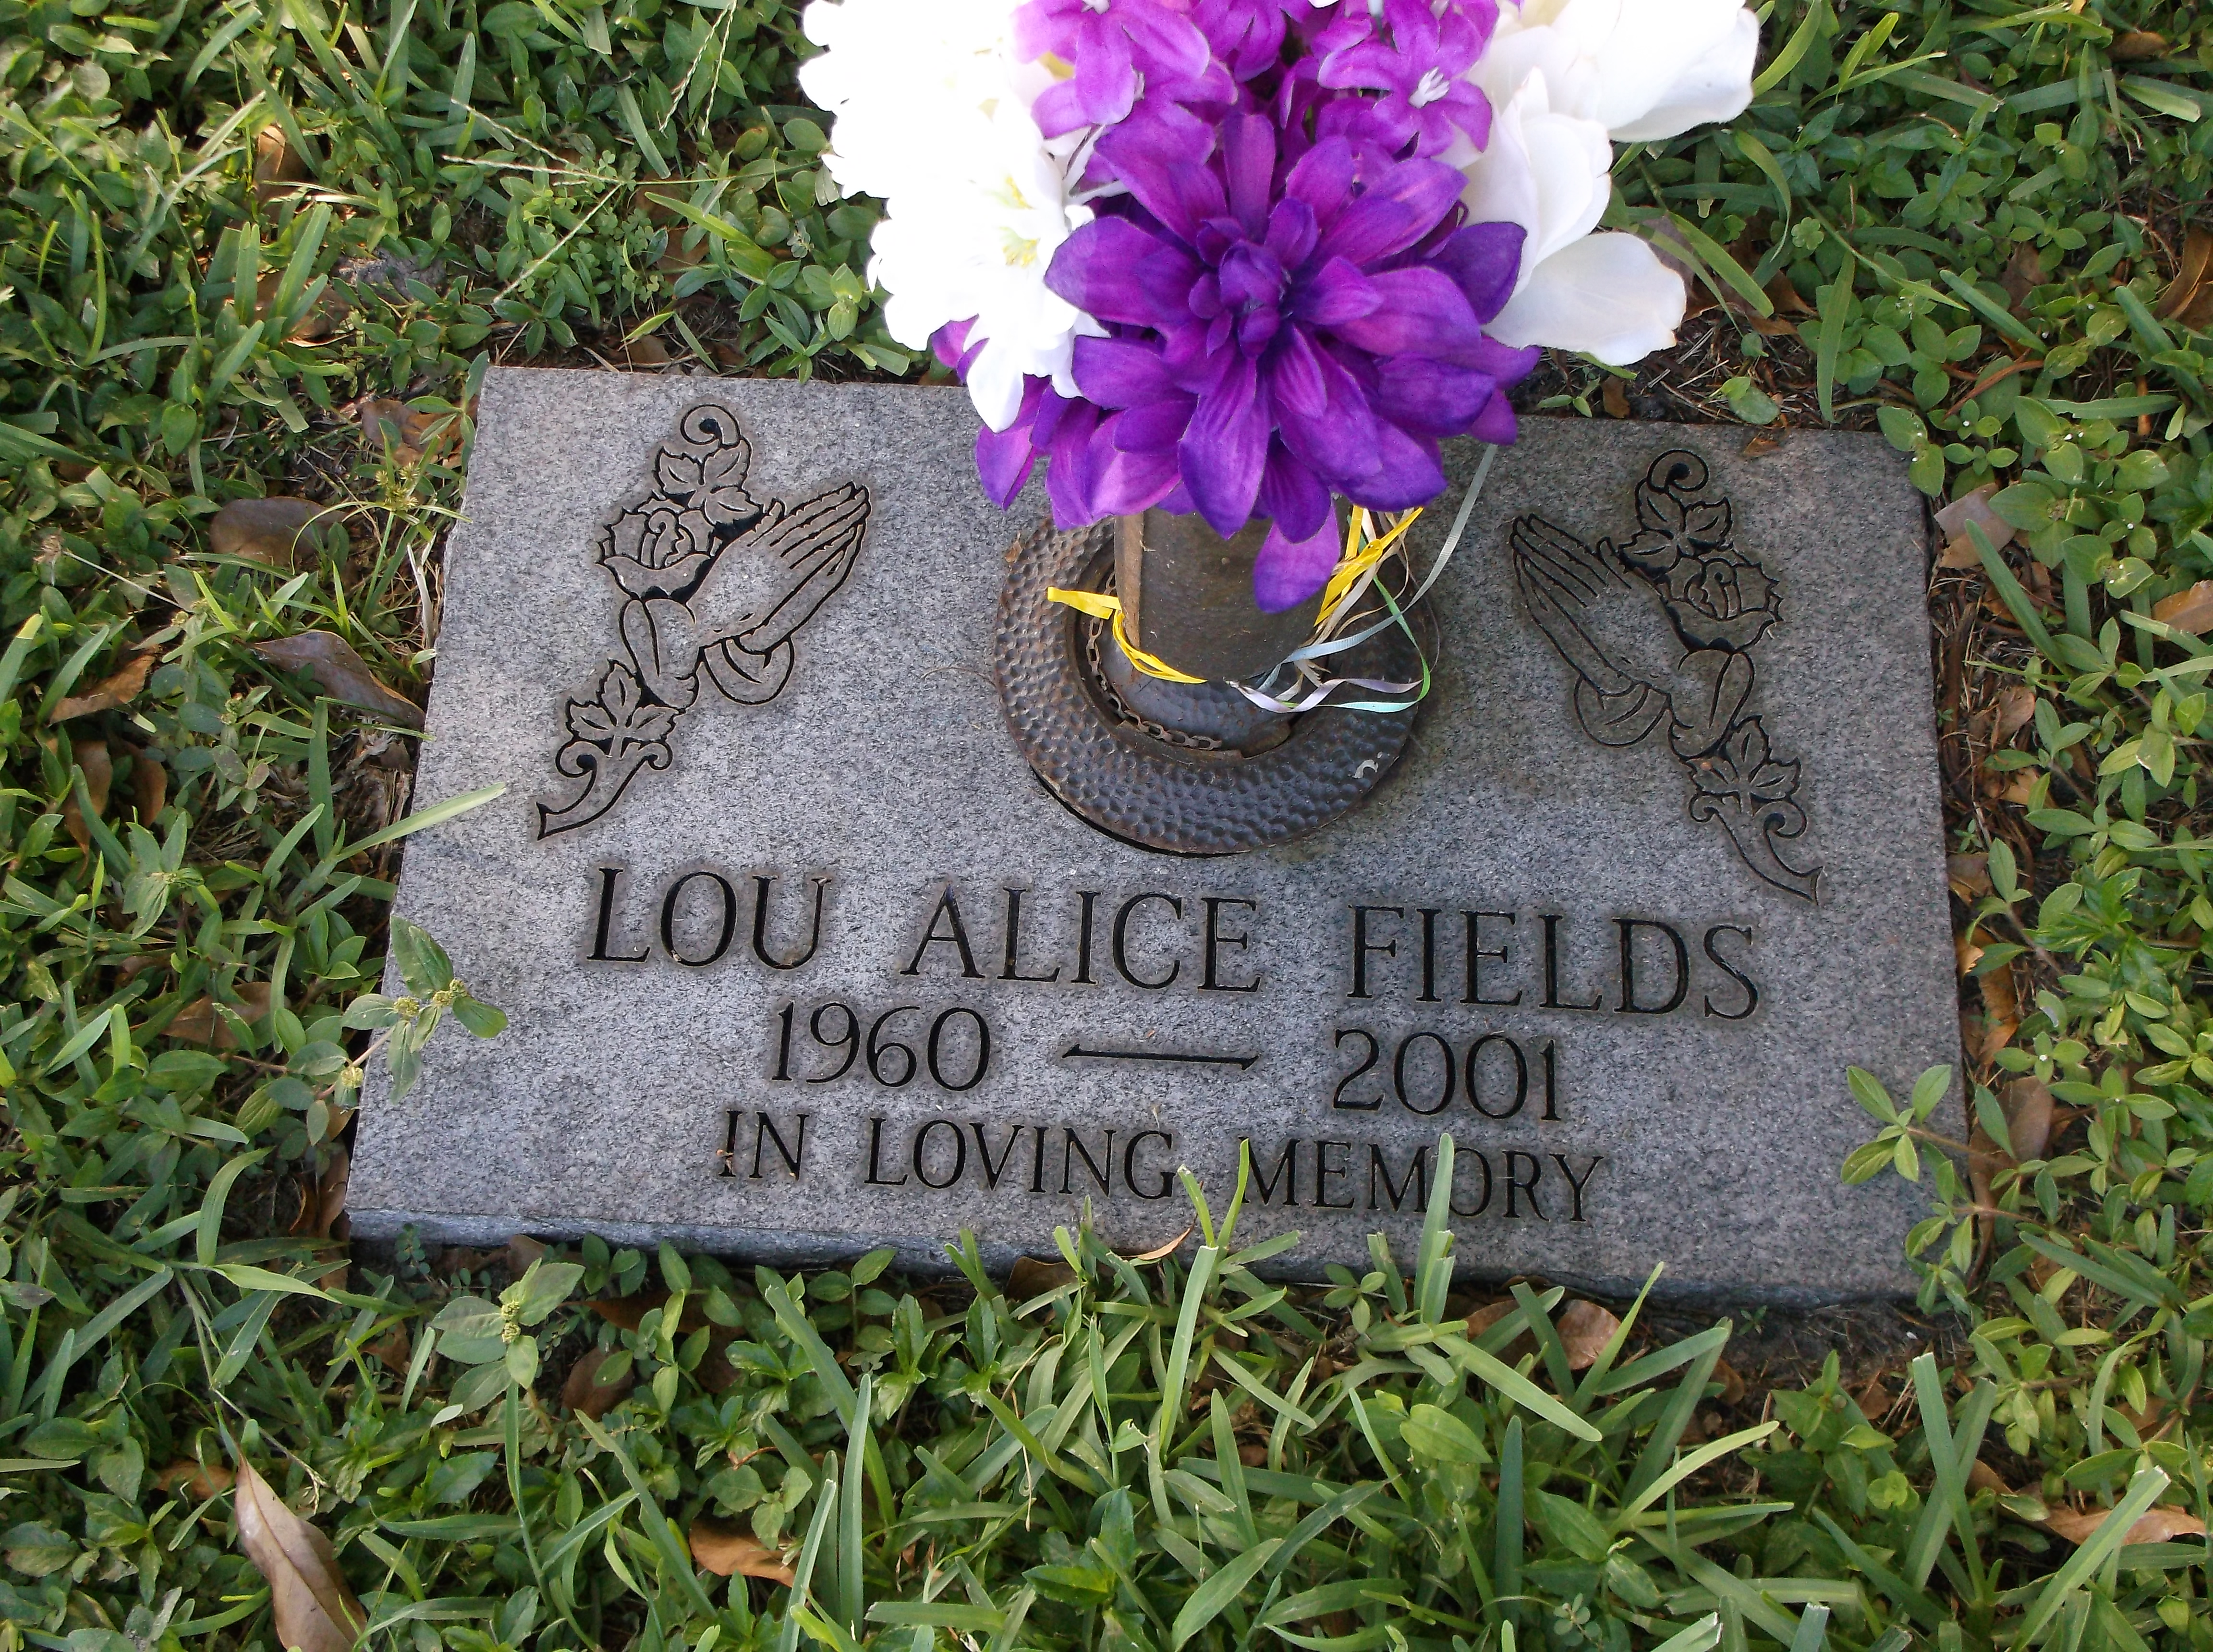 Lou Alice Fields